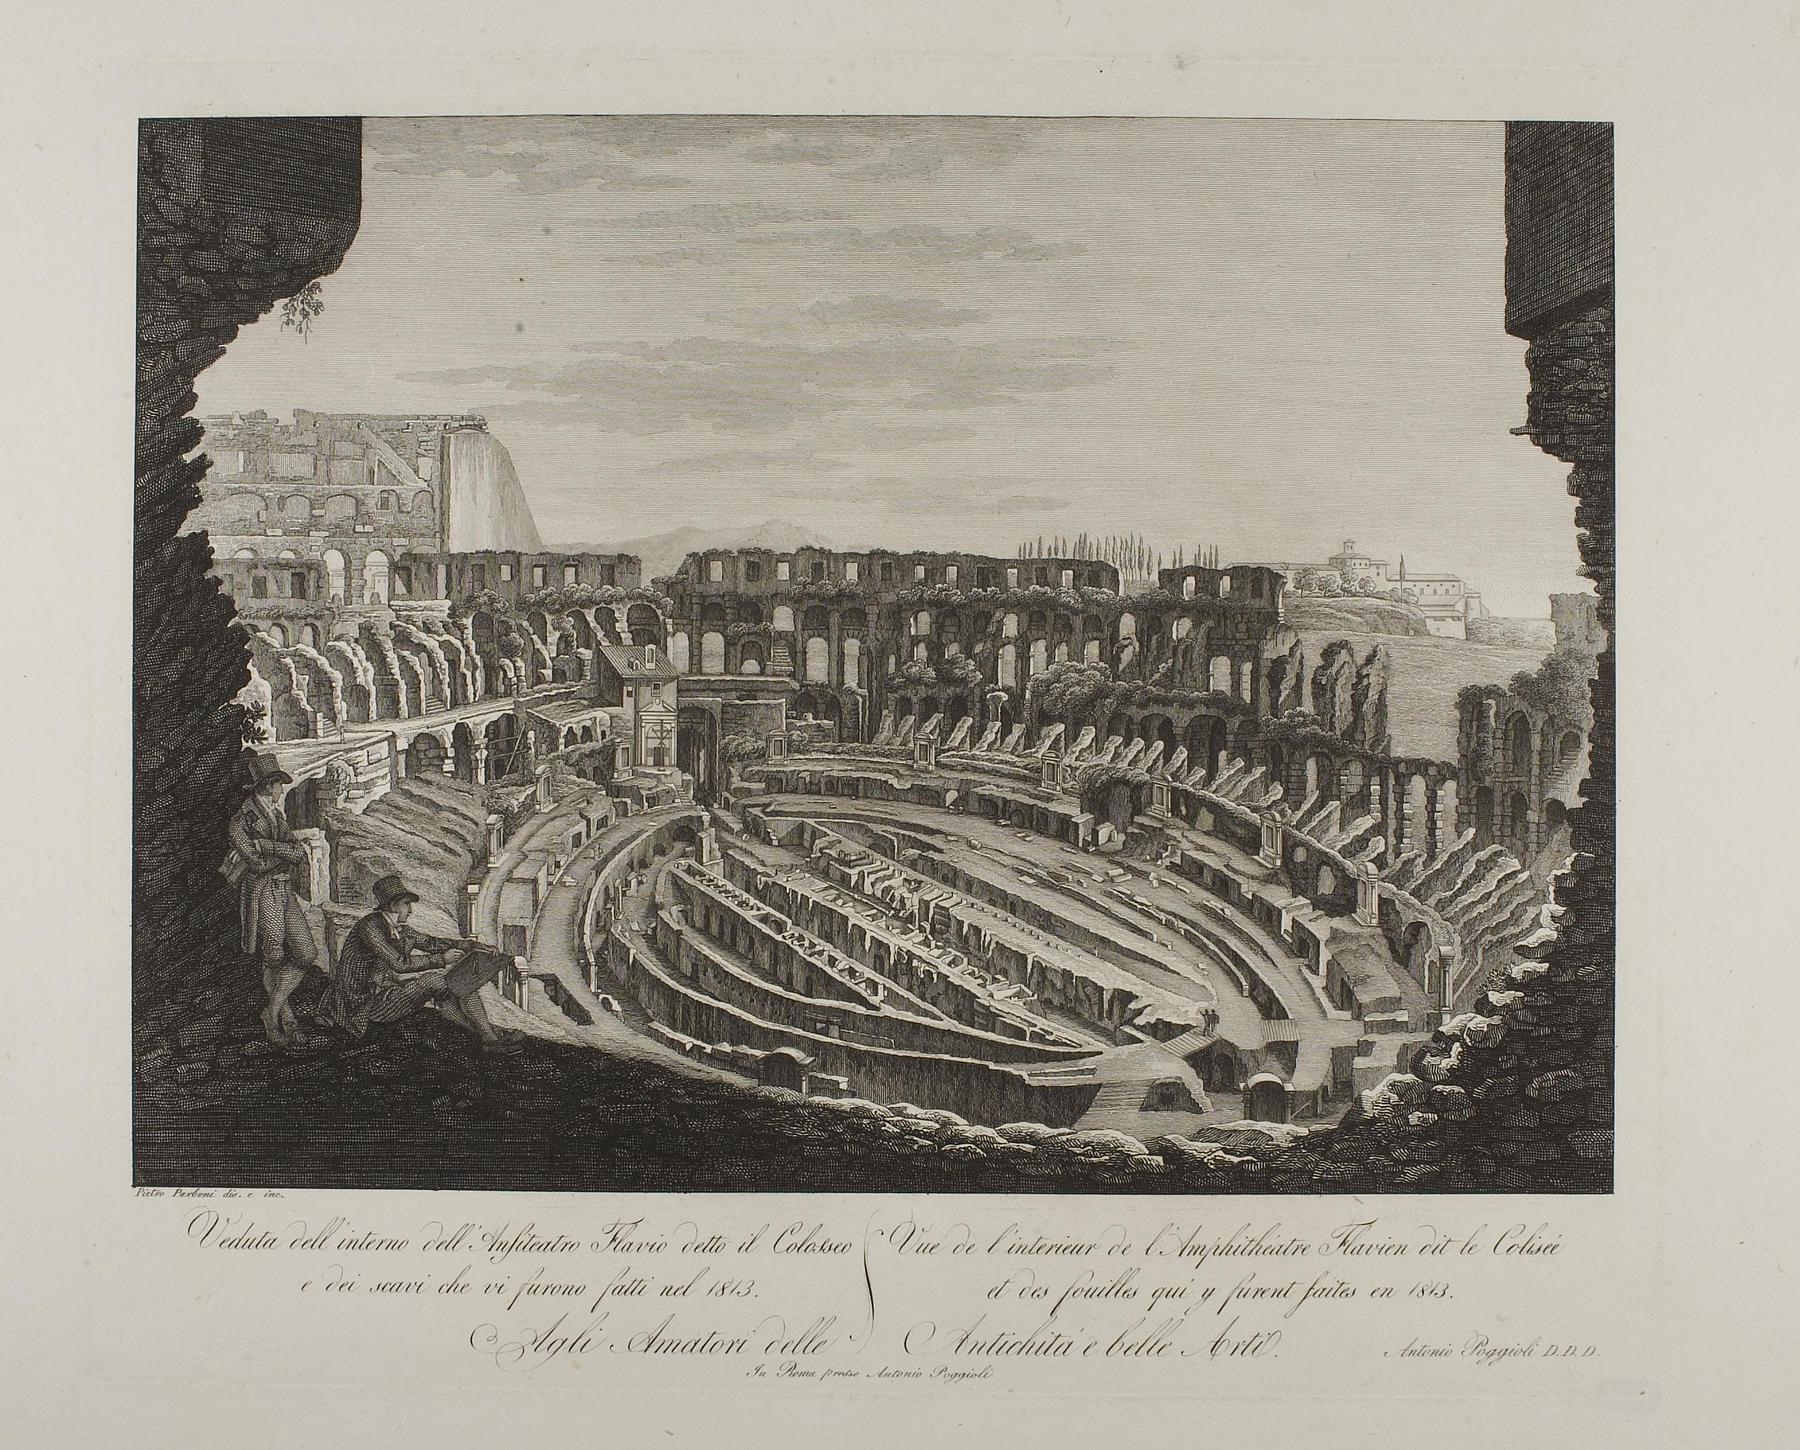 The Colosseum in Rome, E907